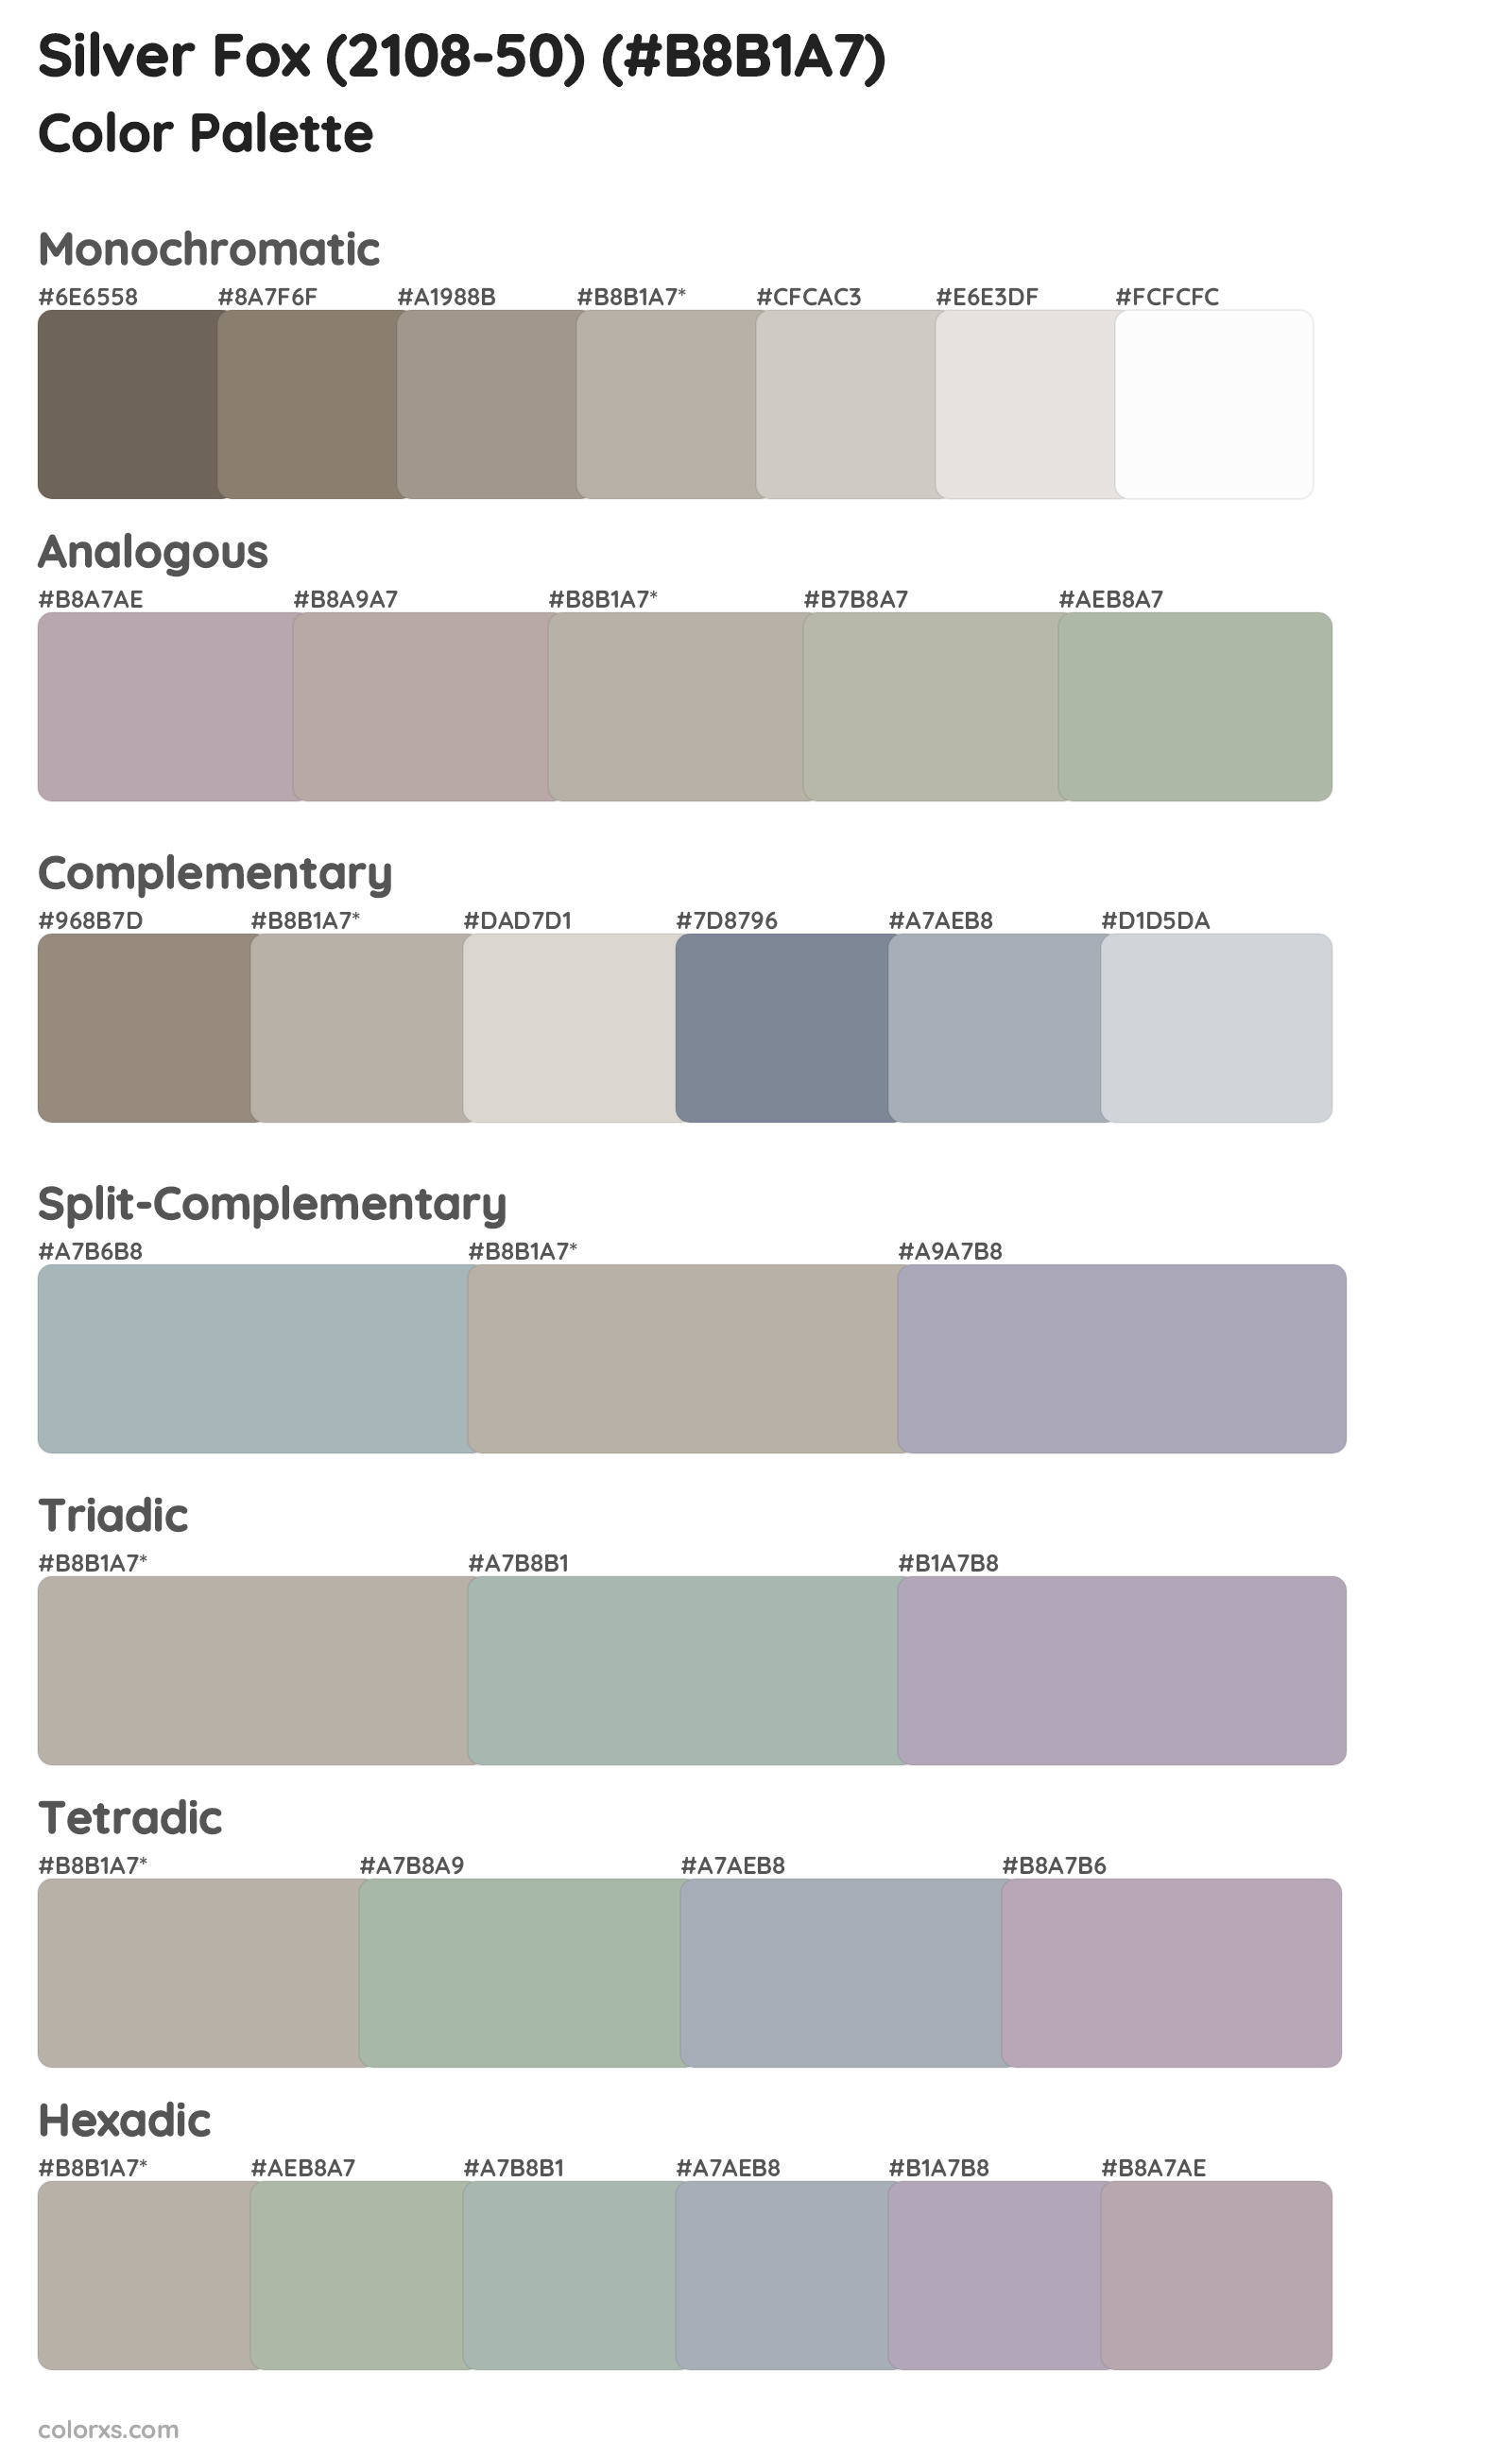 Silver Fox (2108-50) Color Scheme Palettes